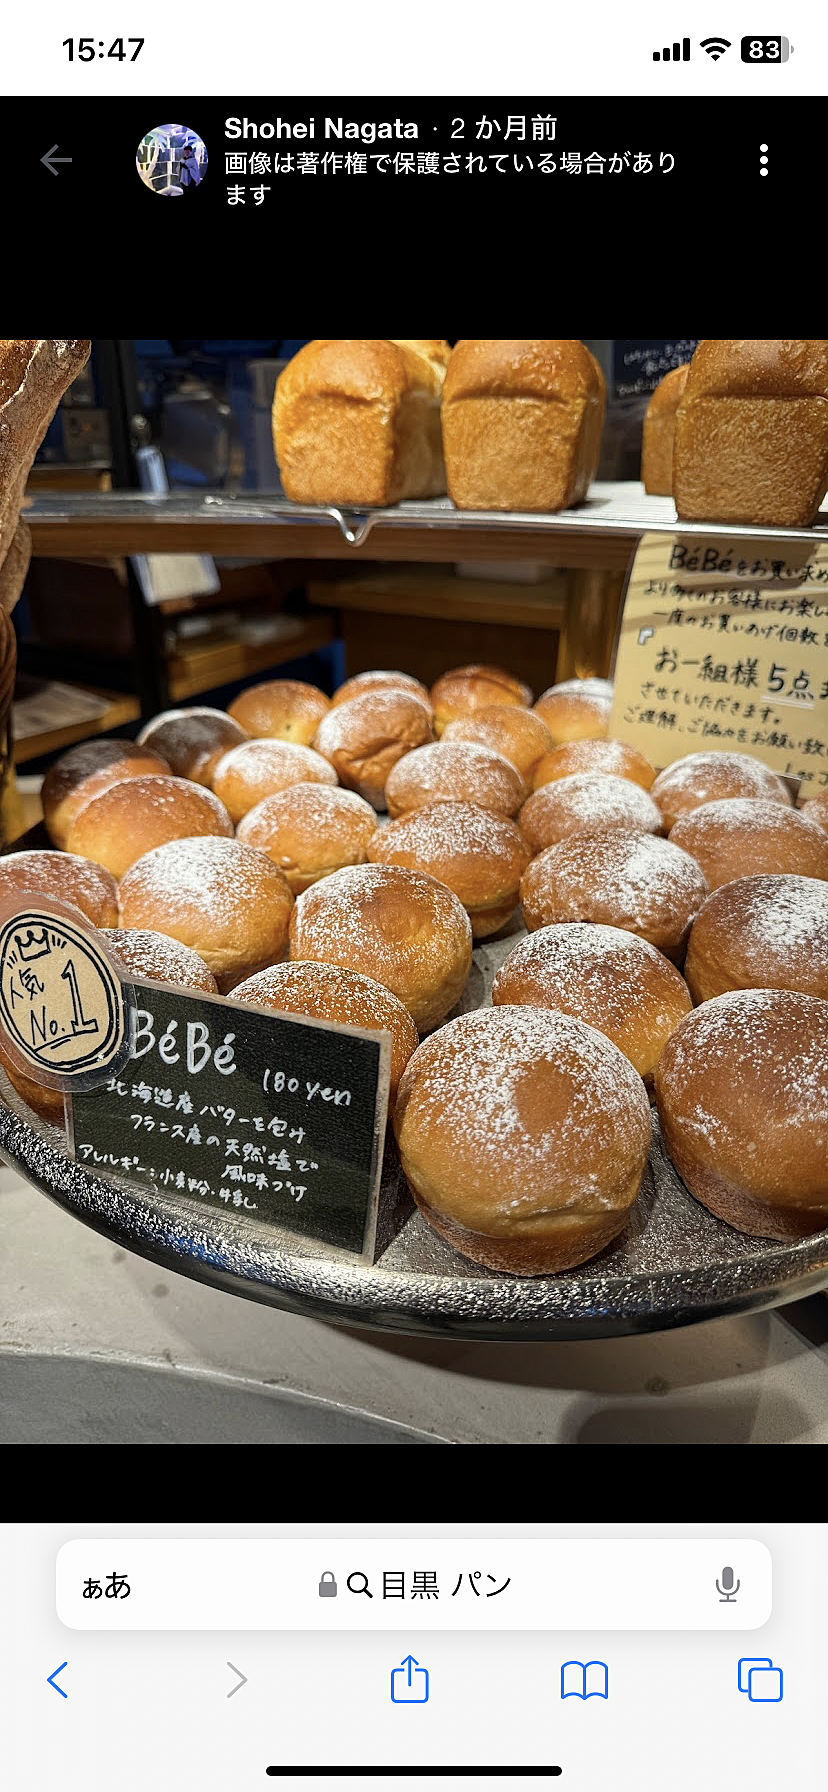 目黒のベーカリーカフェles joues de BeBe/ Having breads and coffees at a cafe C